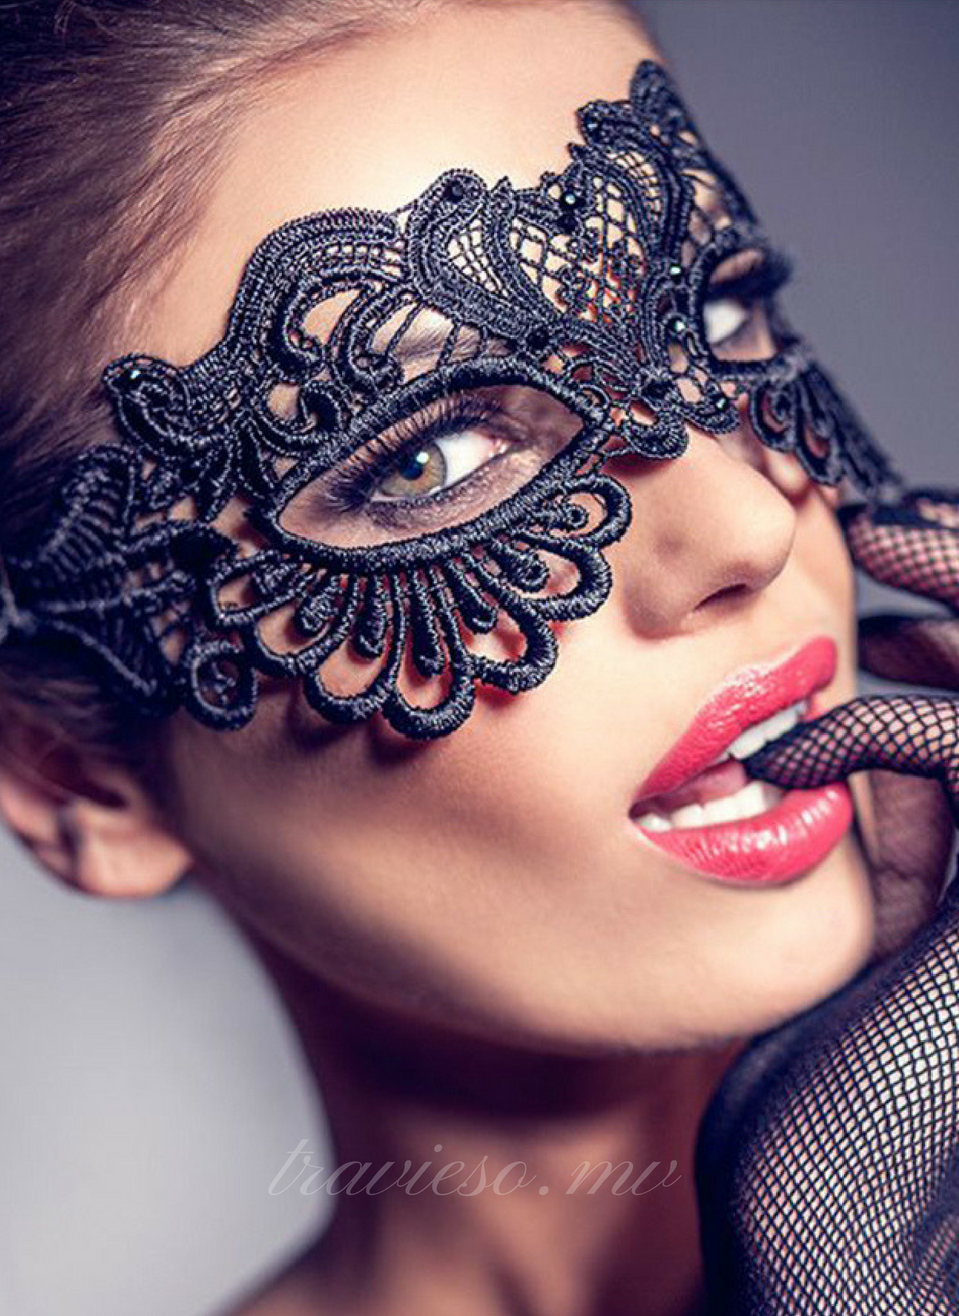 Enchanting Black Lace eye mask - travieso.mv